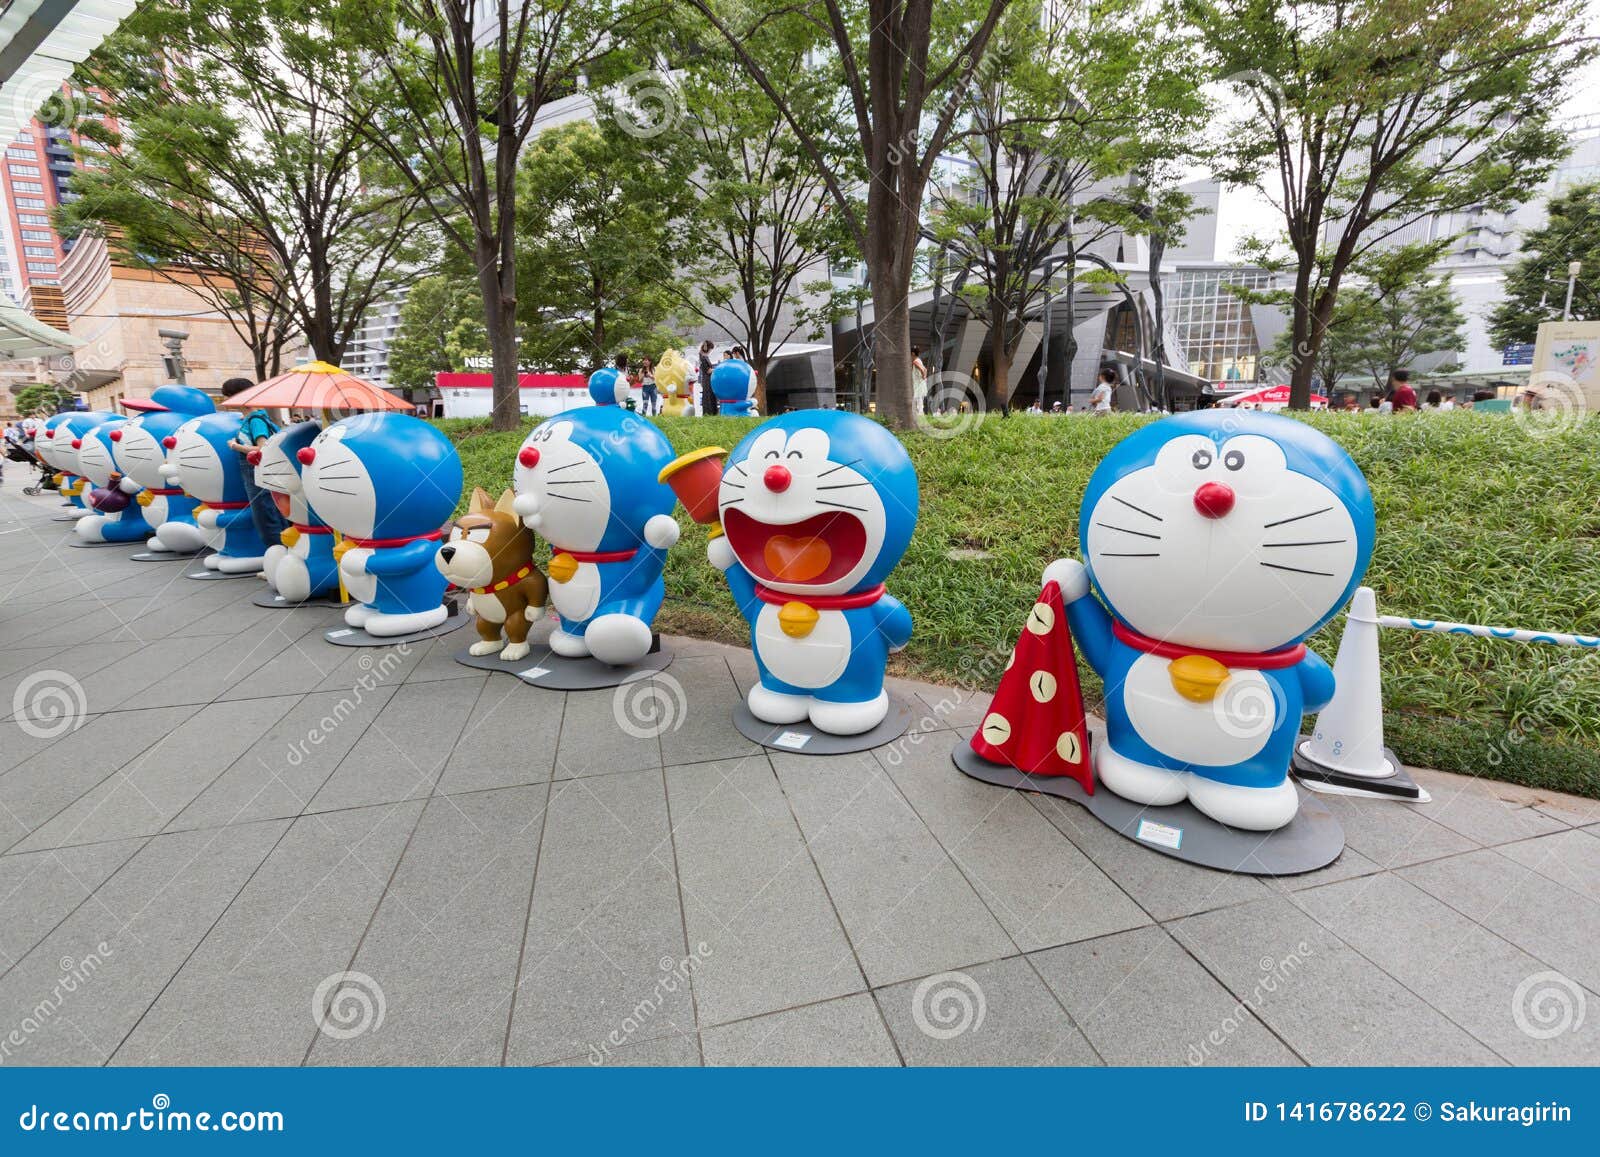 290 Doraemon Fotos Libres De Derechos Y Gratuitas De Dreamstime